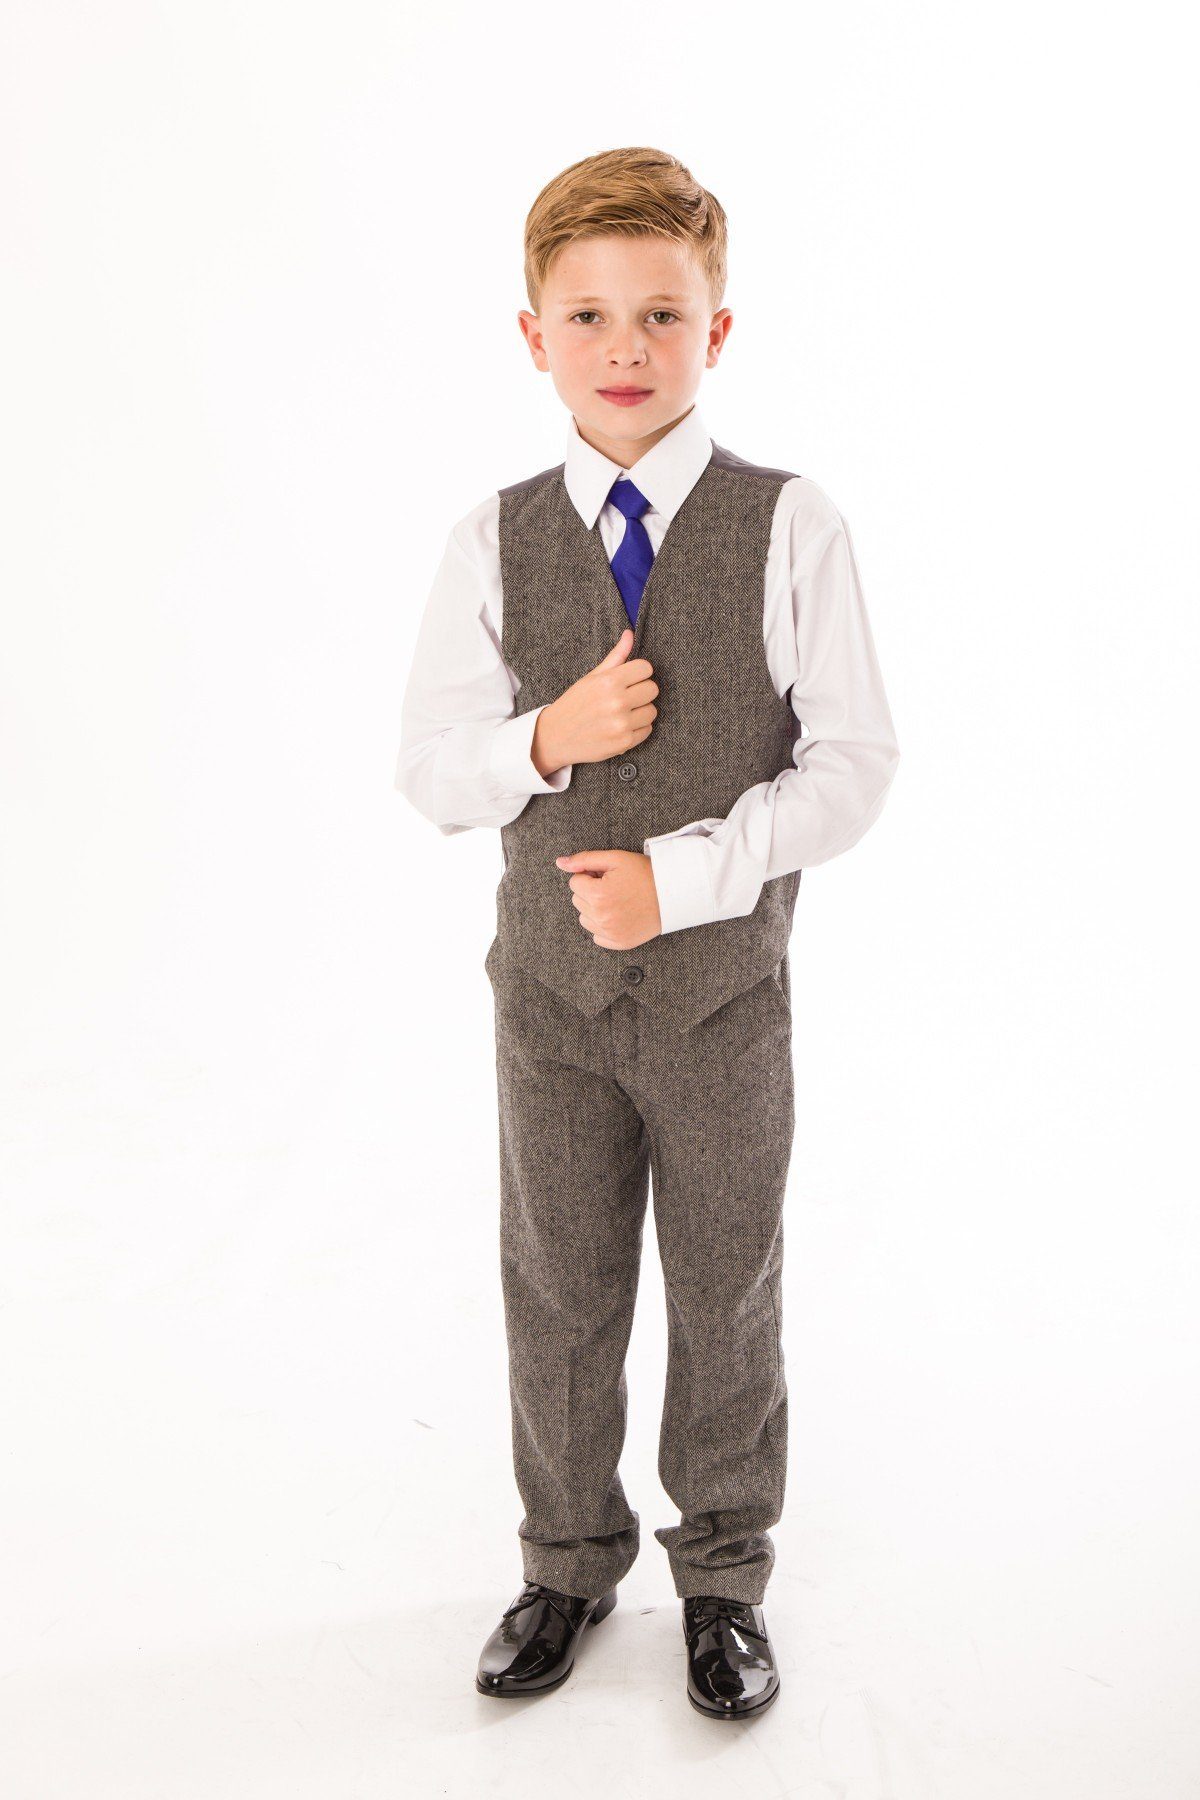 Melli-Trends Kinderanzug Twid Festlicher Jungen Anzug, 4-teilig, grau (Set:  Hemd, Weste, Hose und Krawatte, 4-teilig) festlich, elegant